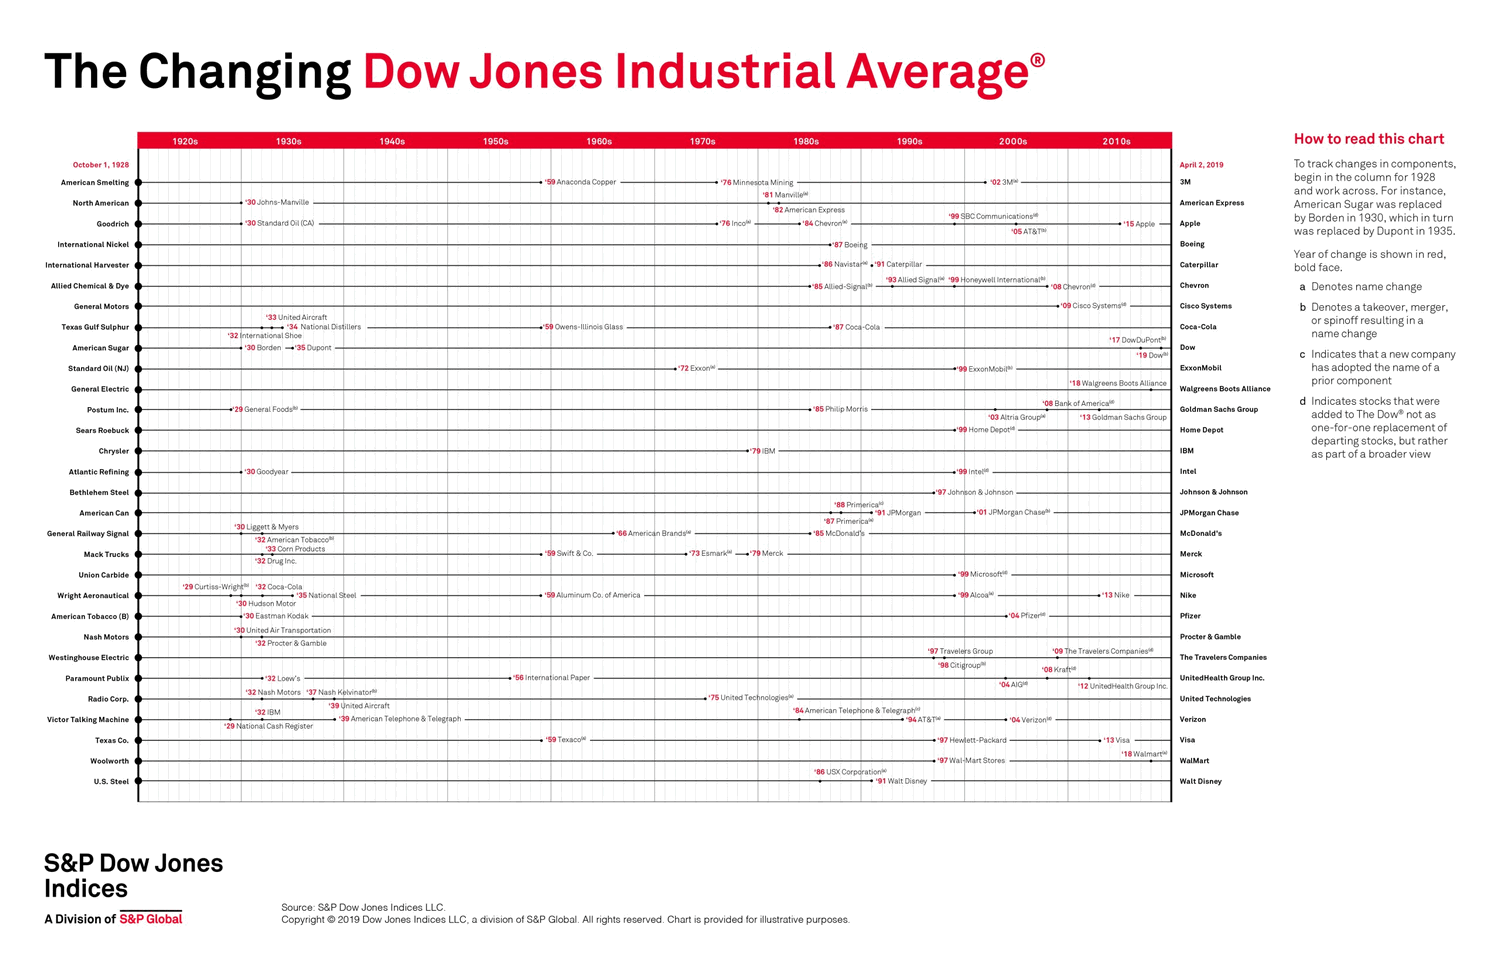 изменение в индексе Доу Джонса за 100 лет